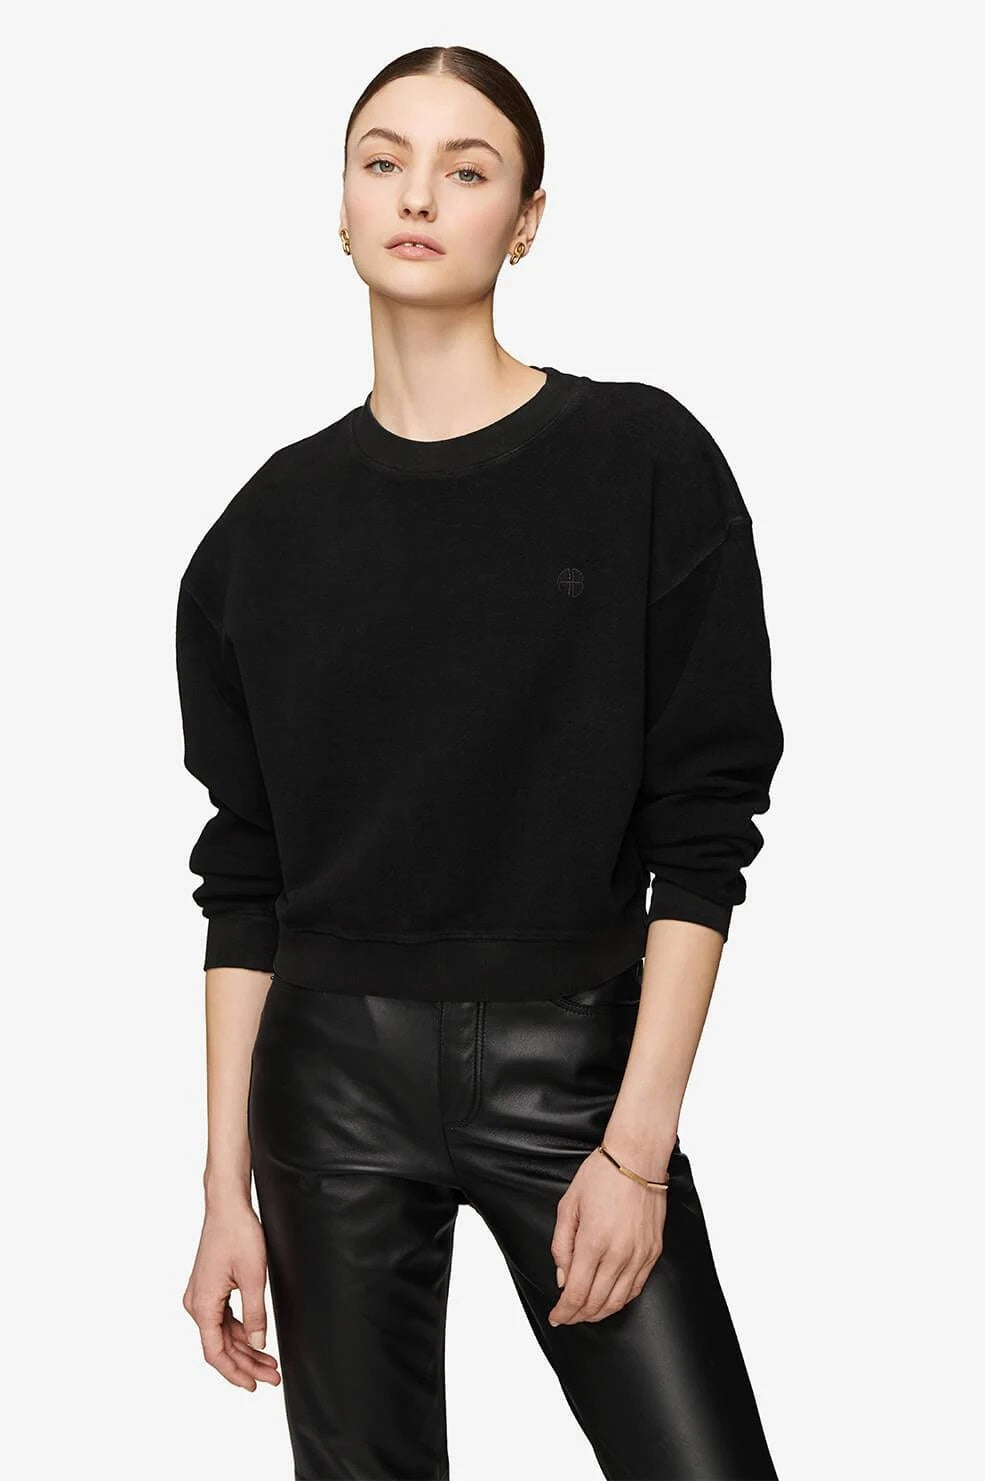 Anine Bing - Reed Sweatshirt in Black